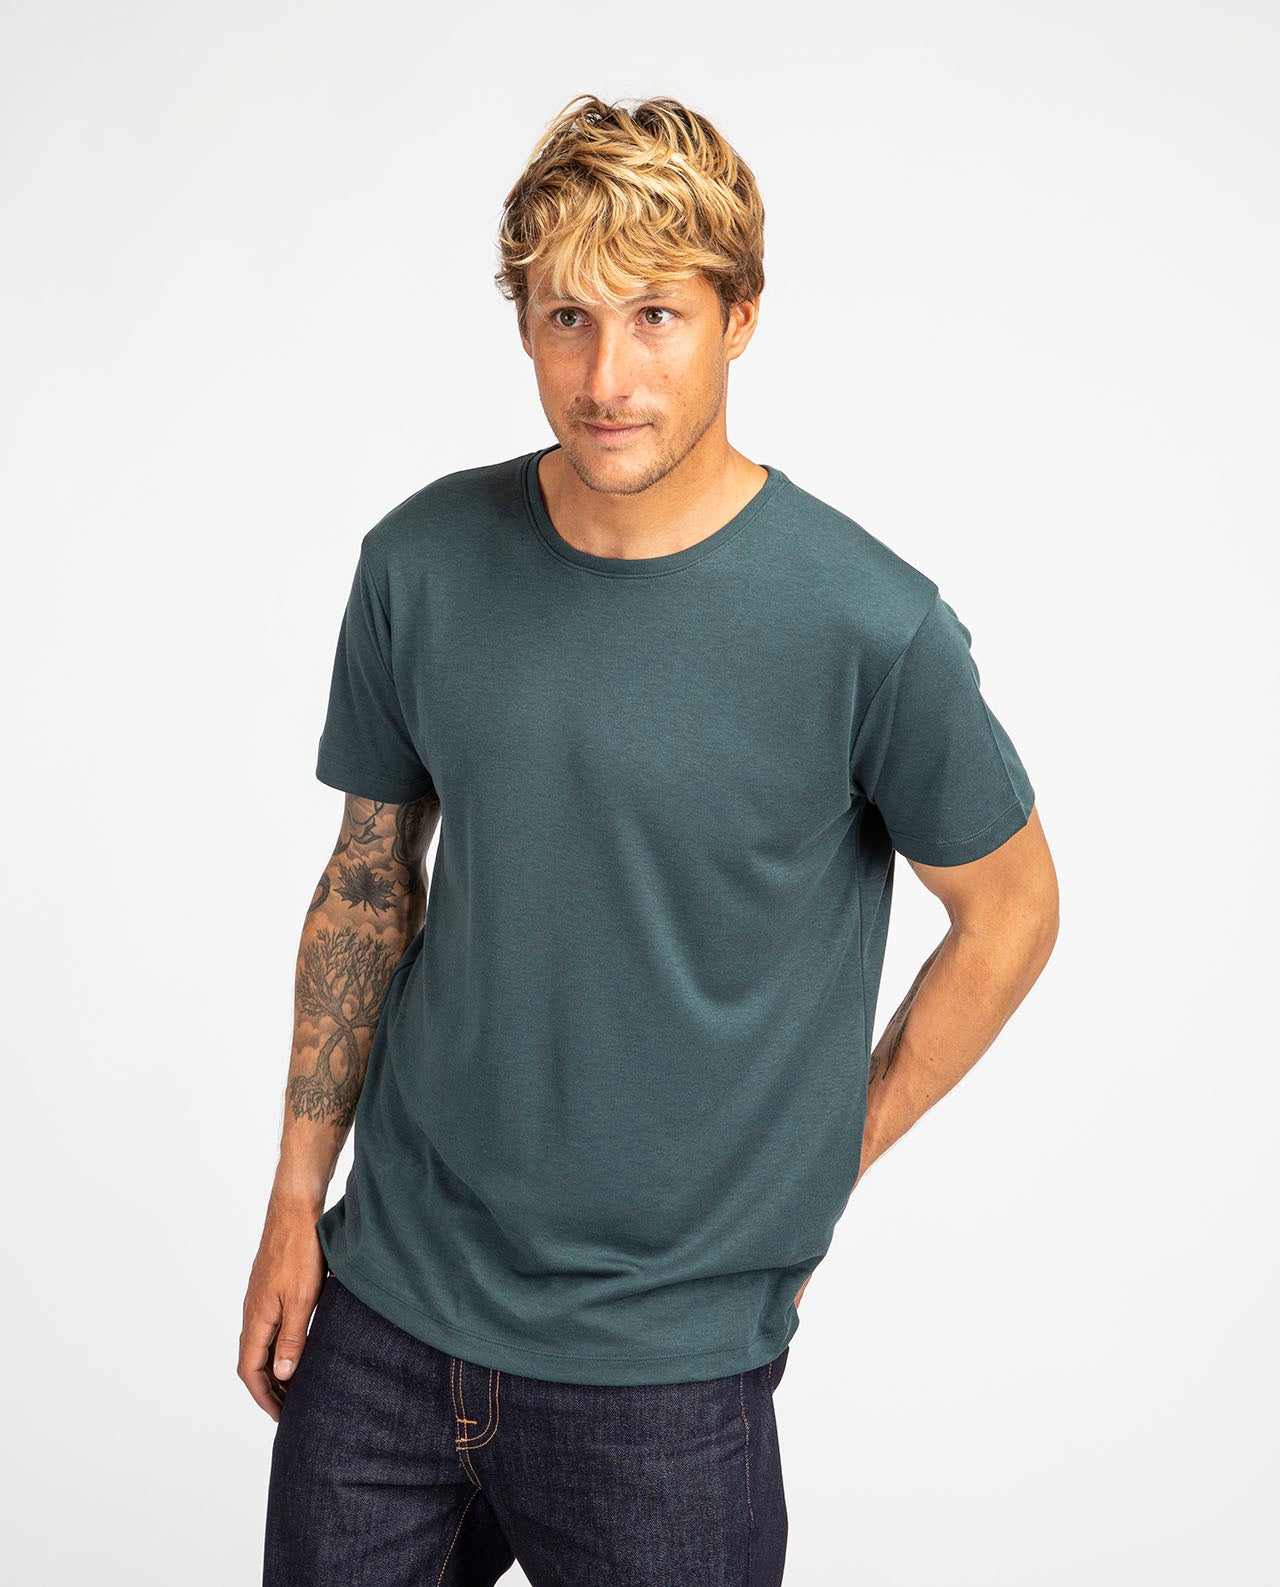 marché commun noyoco t-shirt homme manches courtes lyocell coton biologique éco-responsable éthique vert bouteille